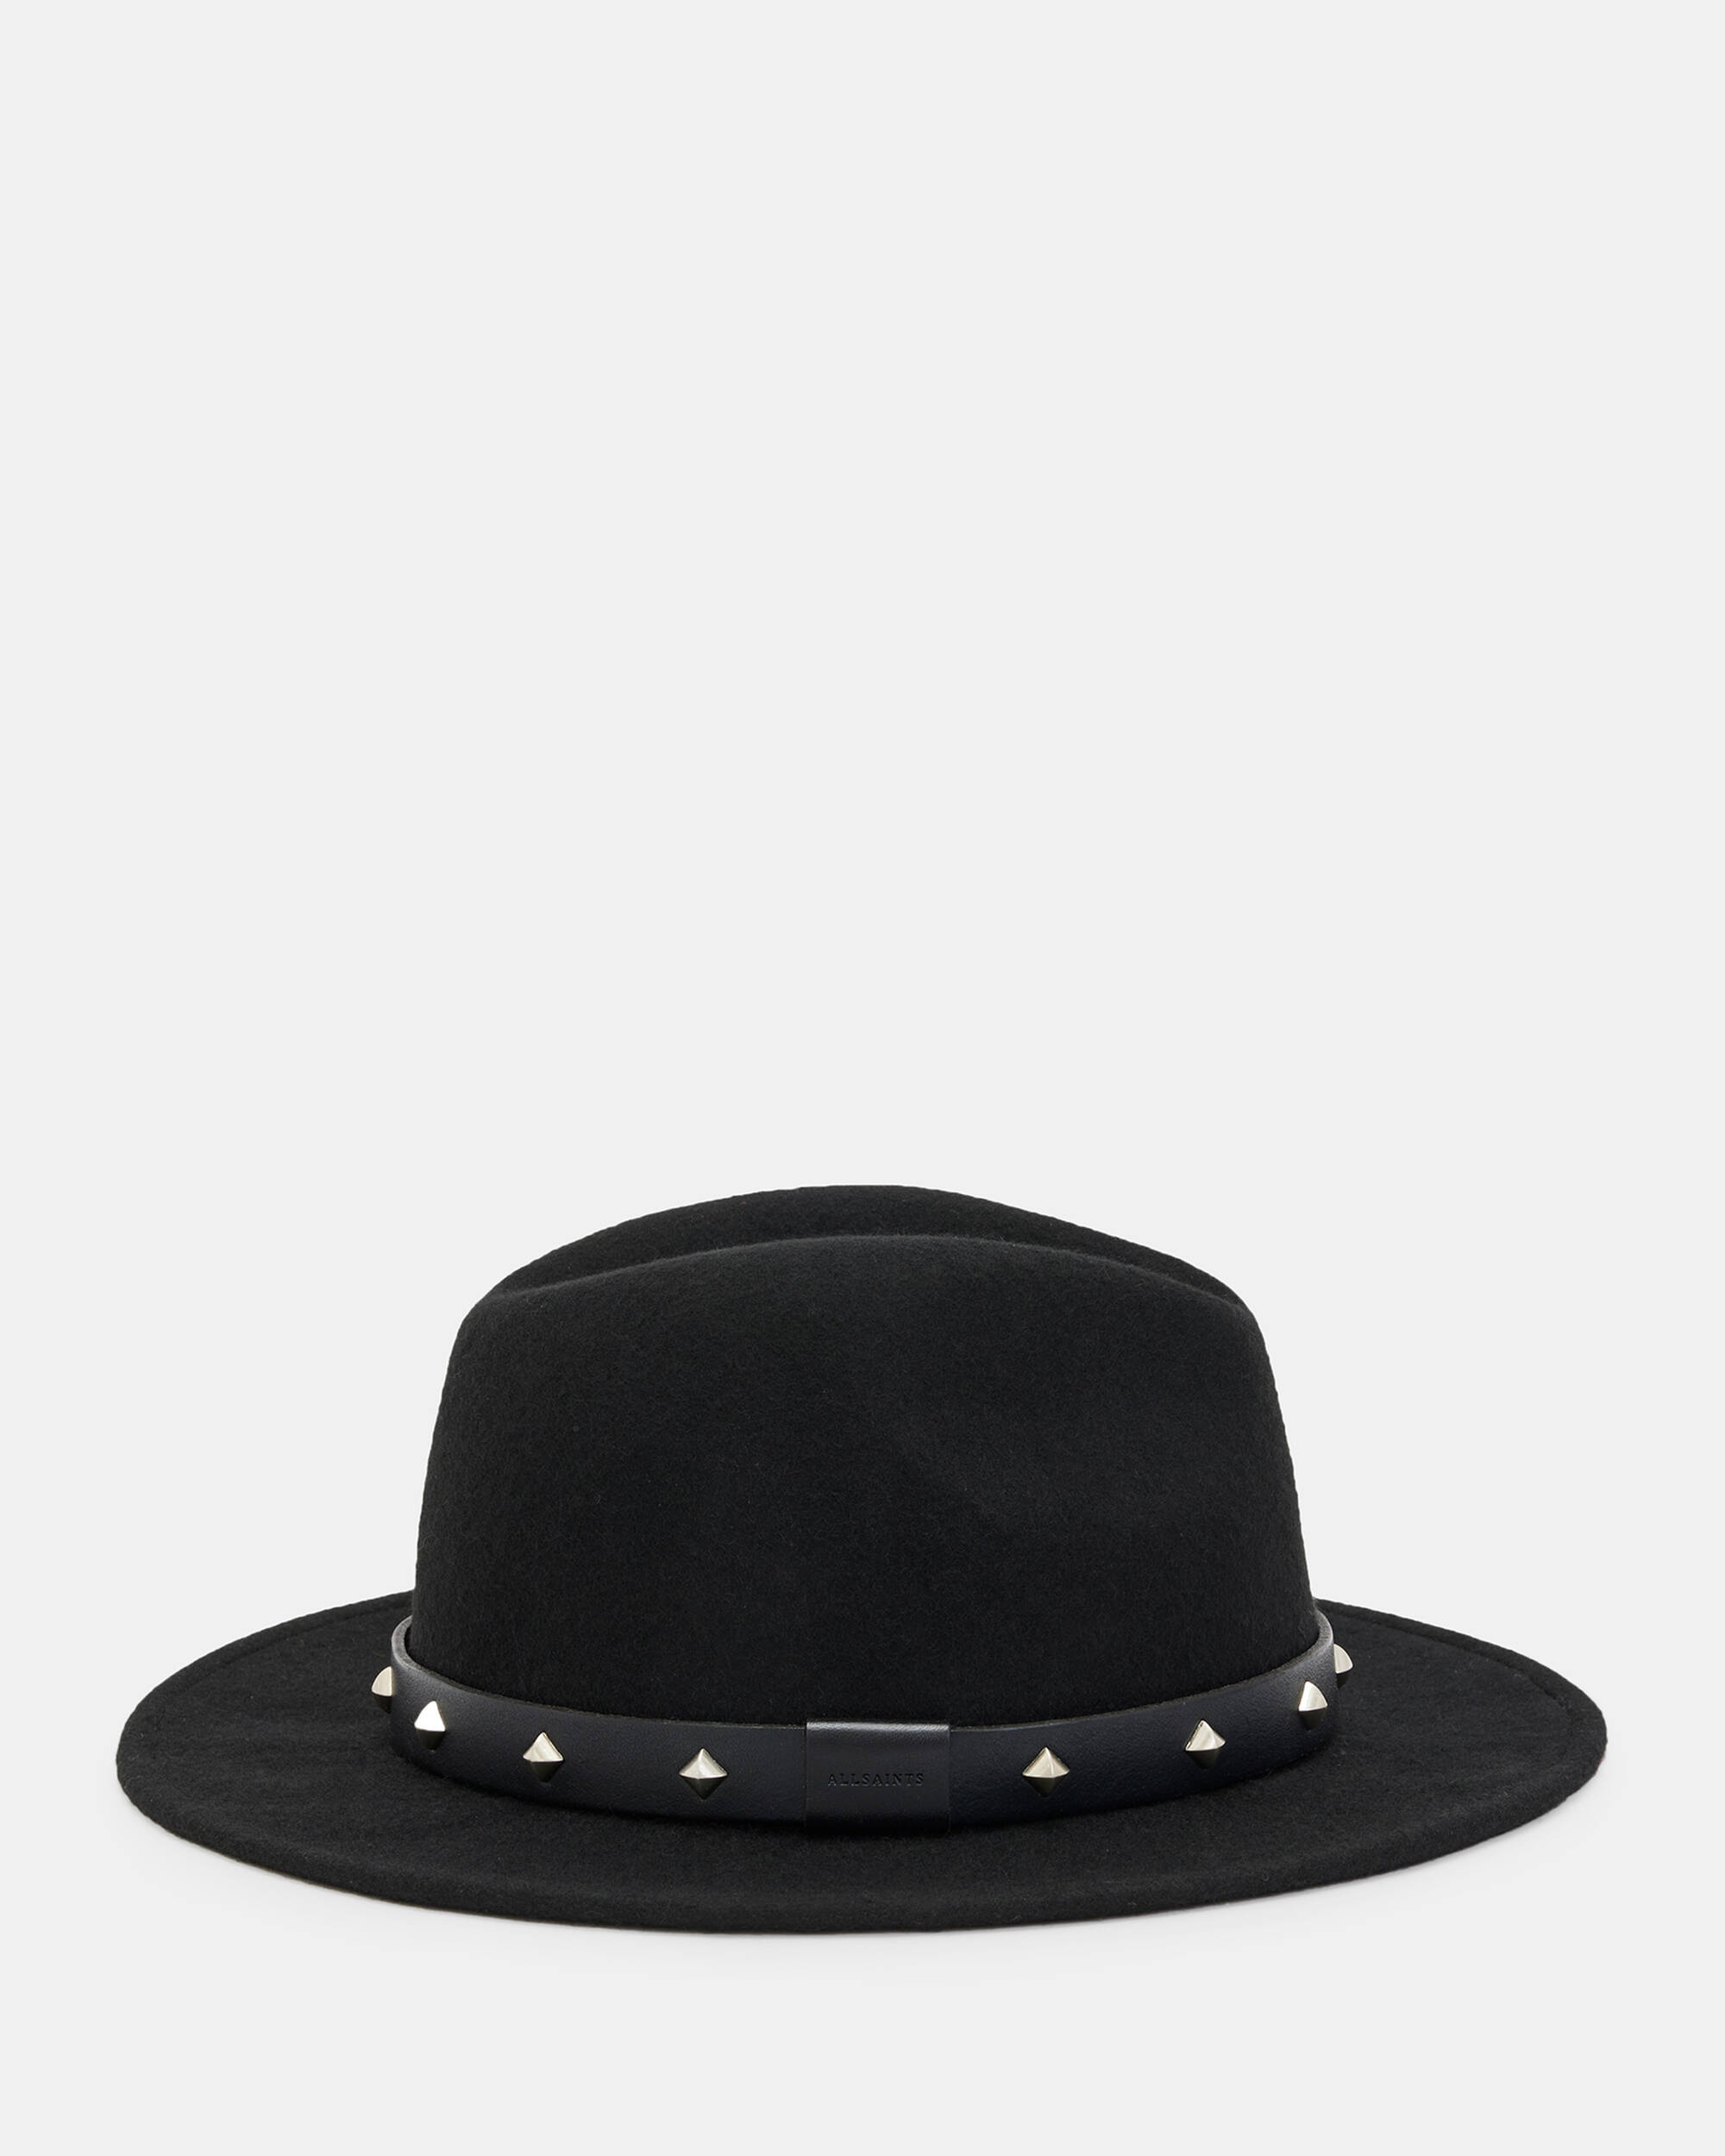 Maxie Studded Fedora Hat  large image number 4